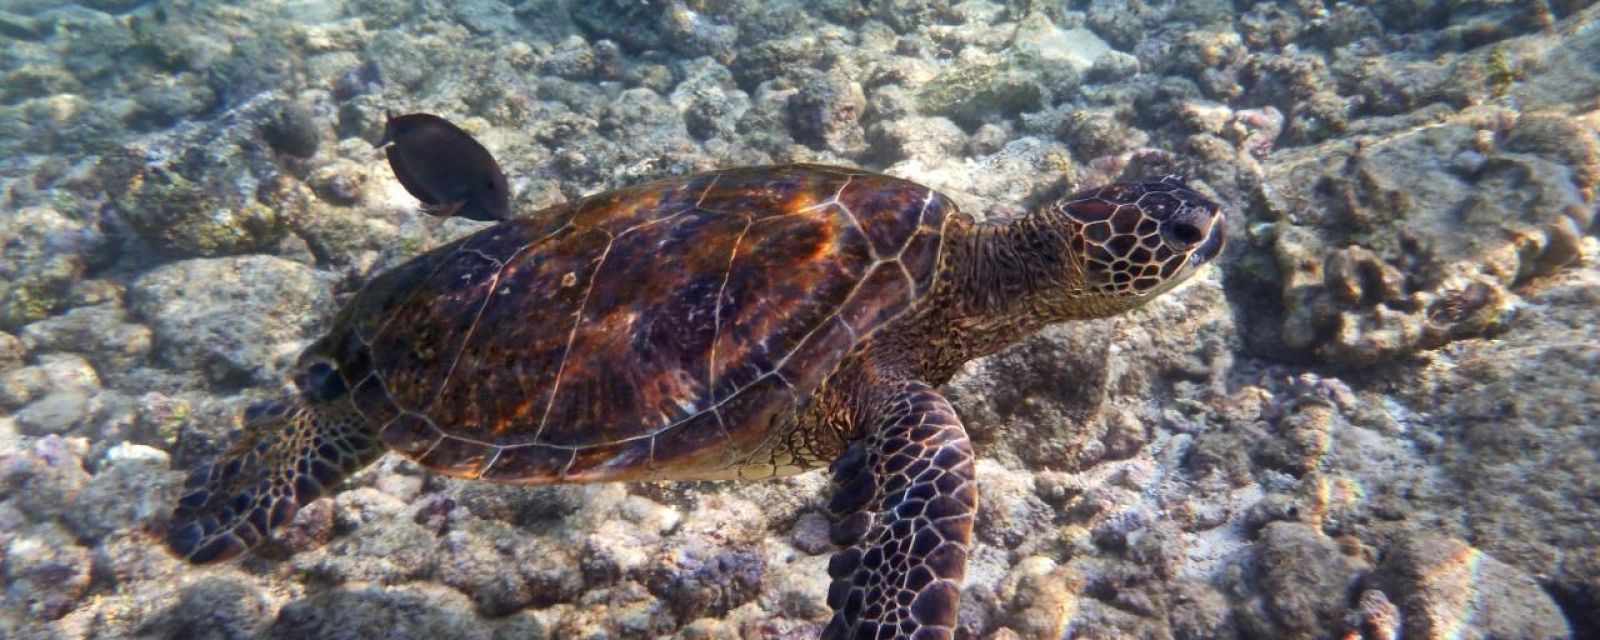 Hawaii - Big Island - Best Snorkel Spots